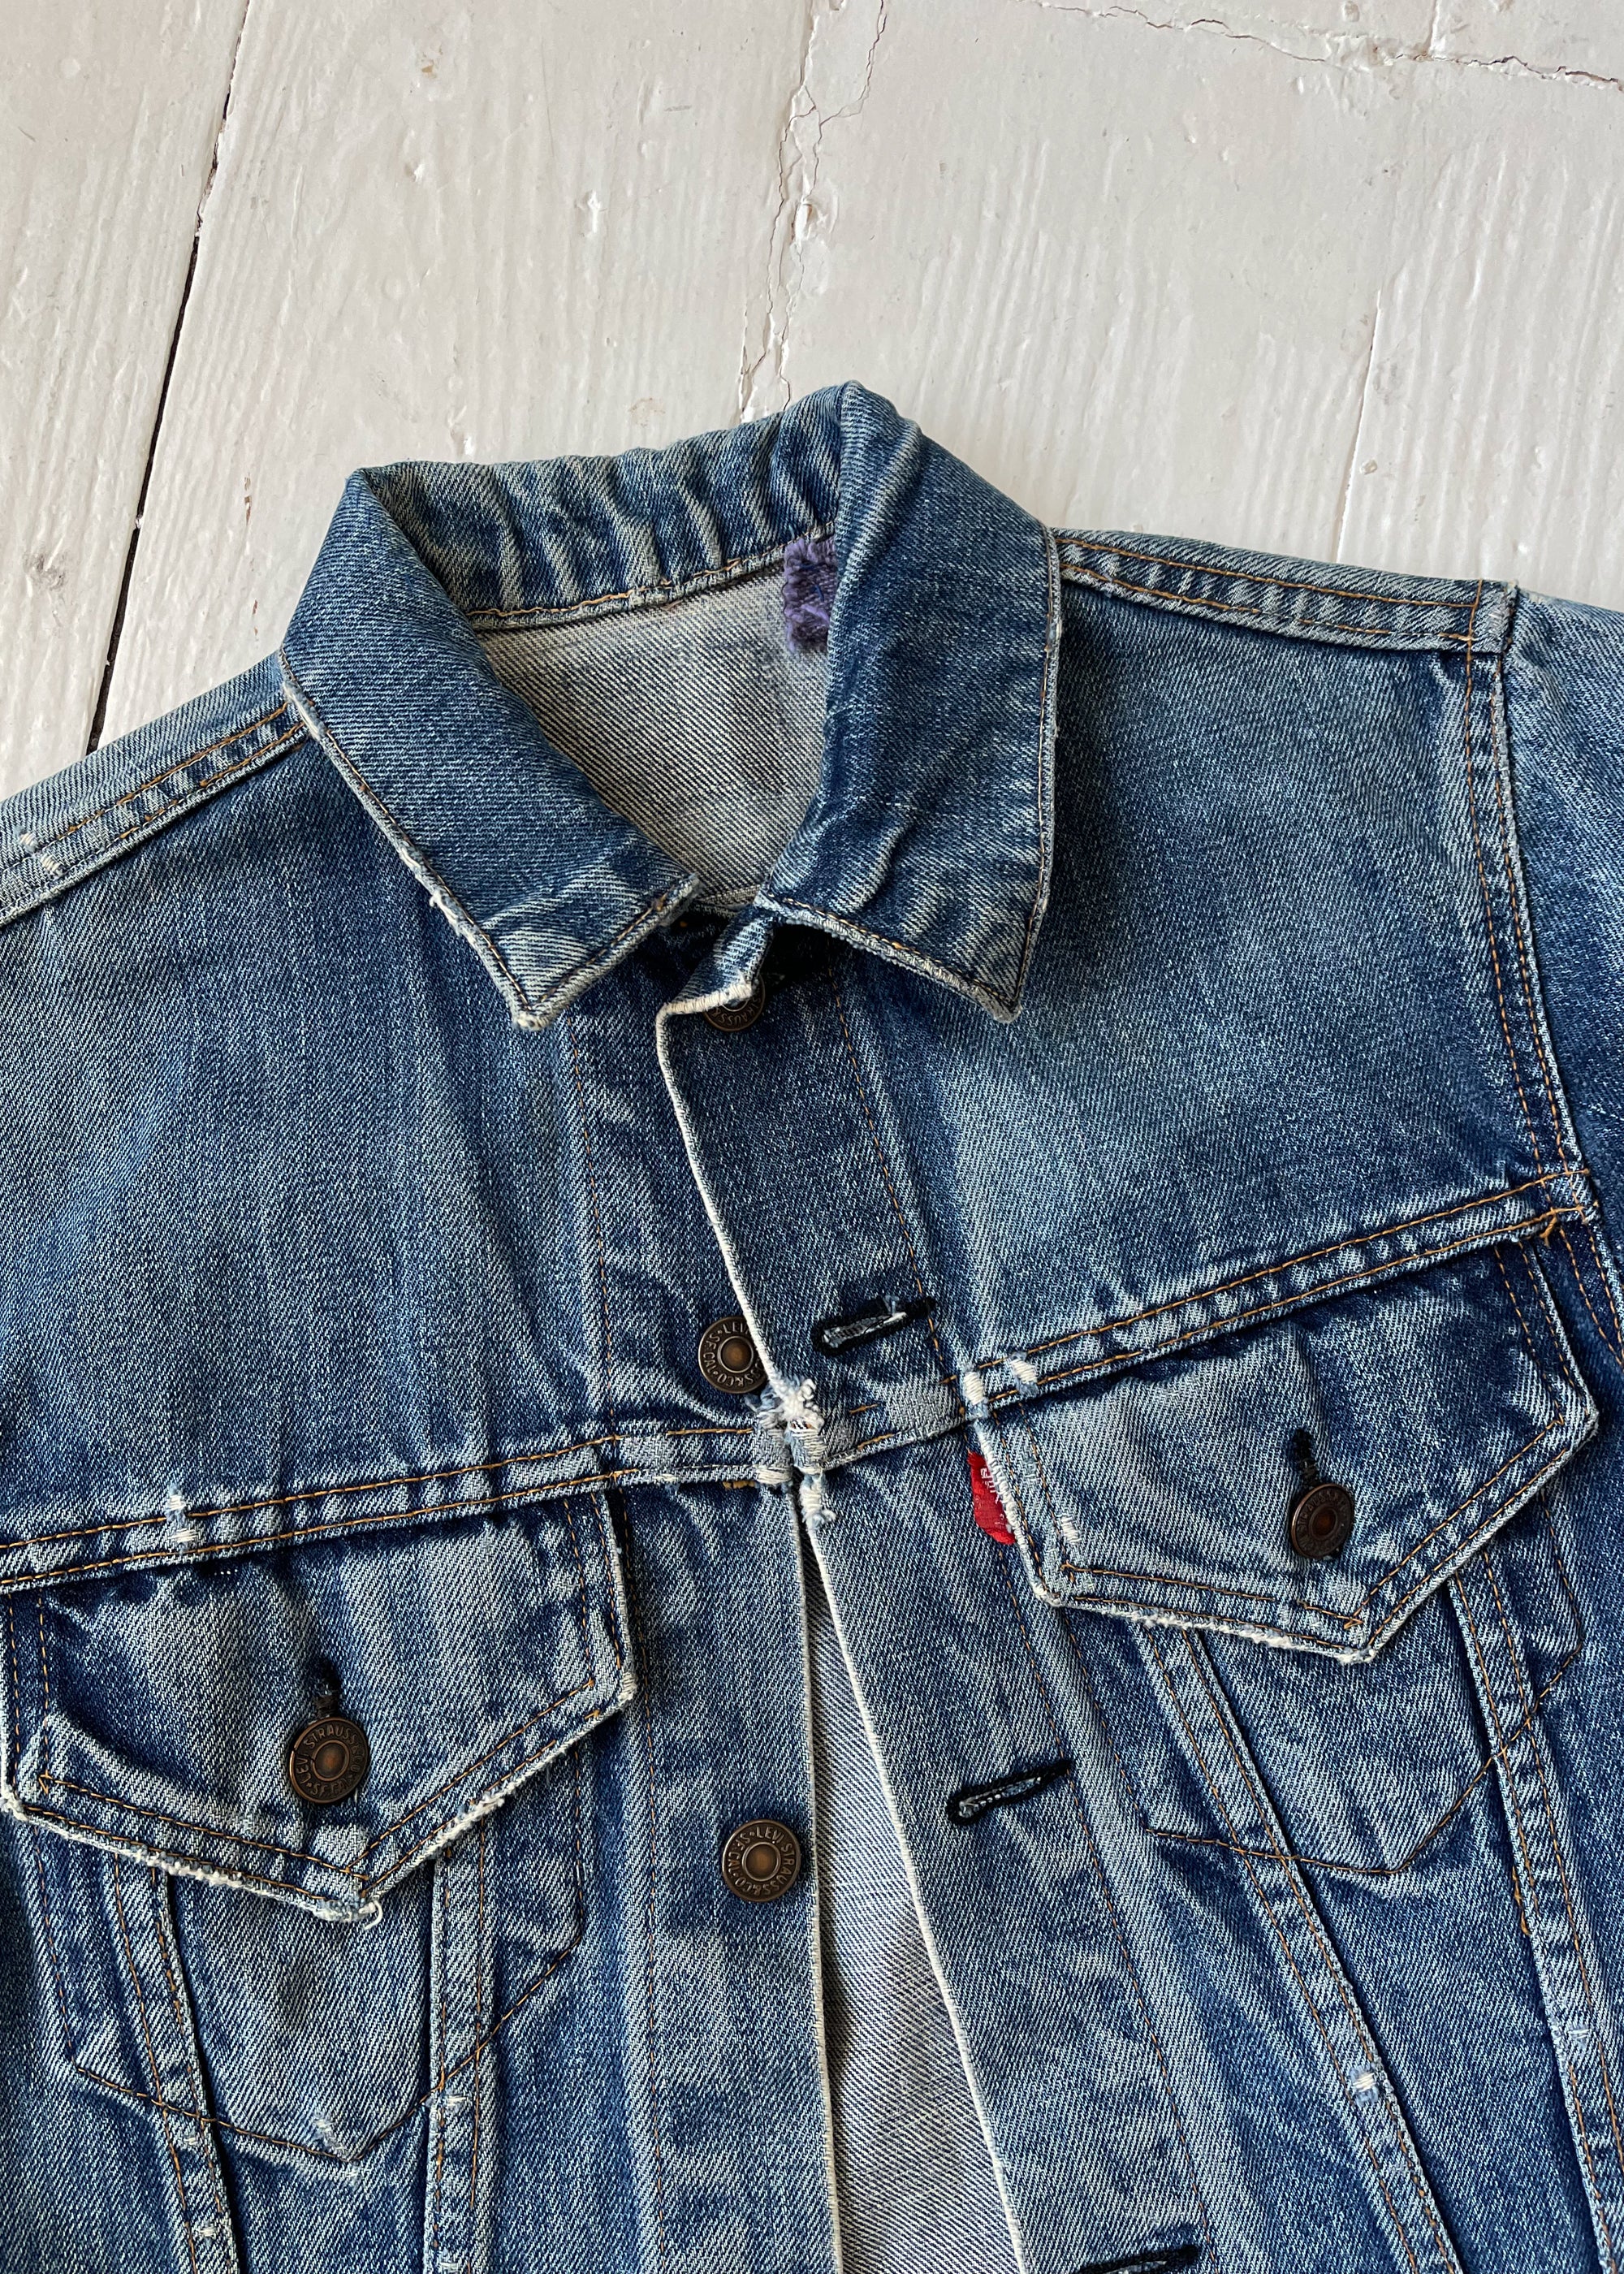 Levi's Premium Jean Jacket | Premium jeans, Jackets, Levi's